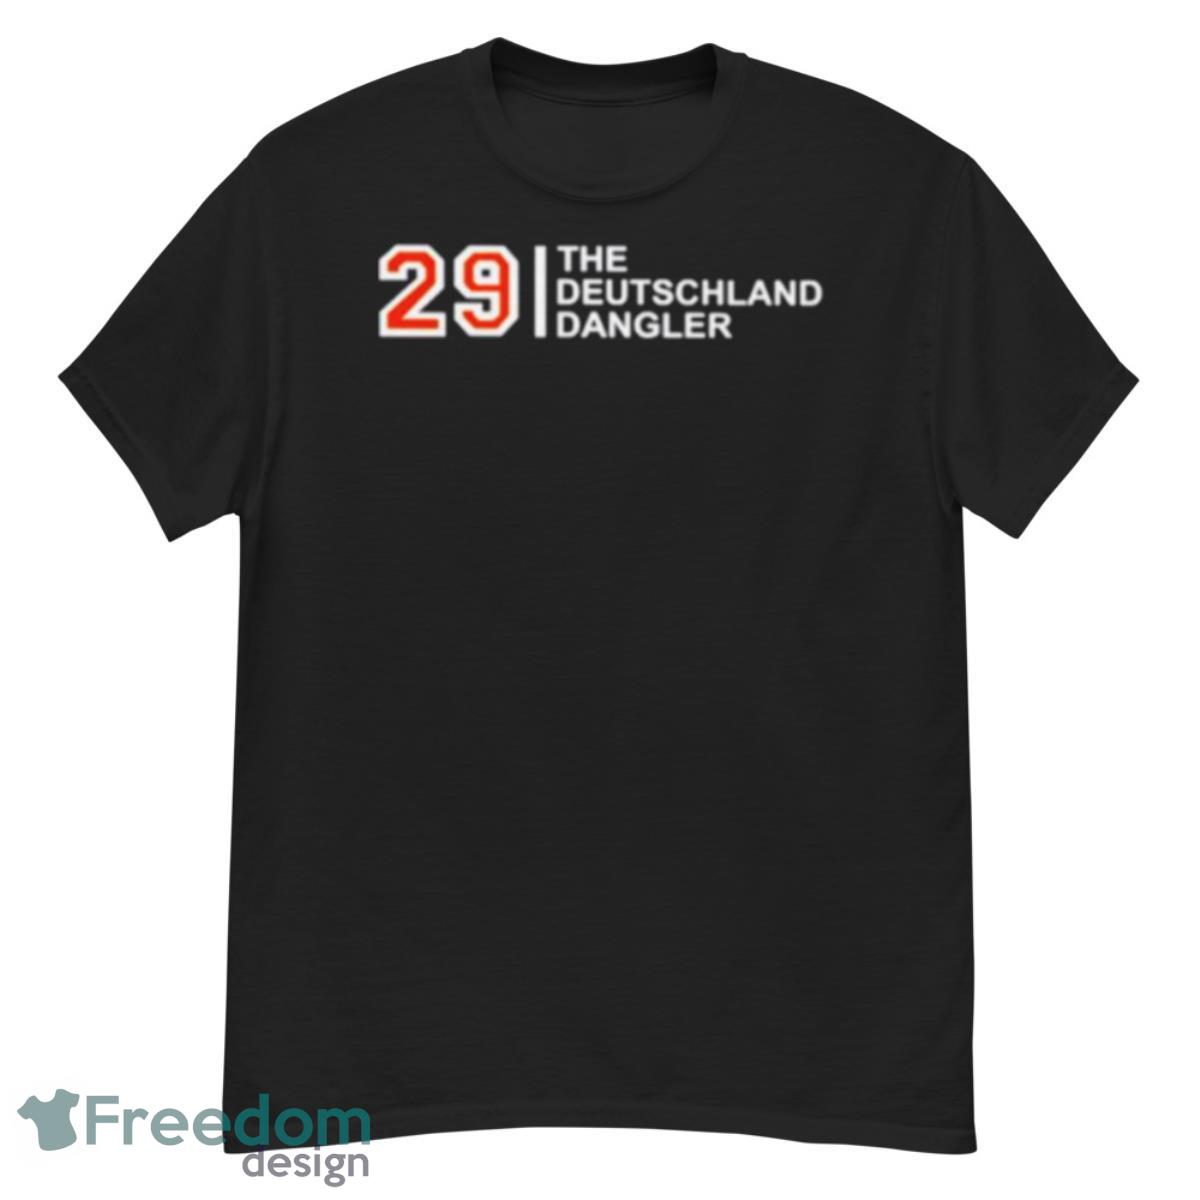 29 the deutschland dangler shirt - G500 Men’s Classic T-Shirt